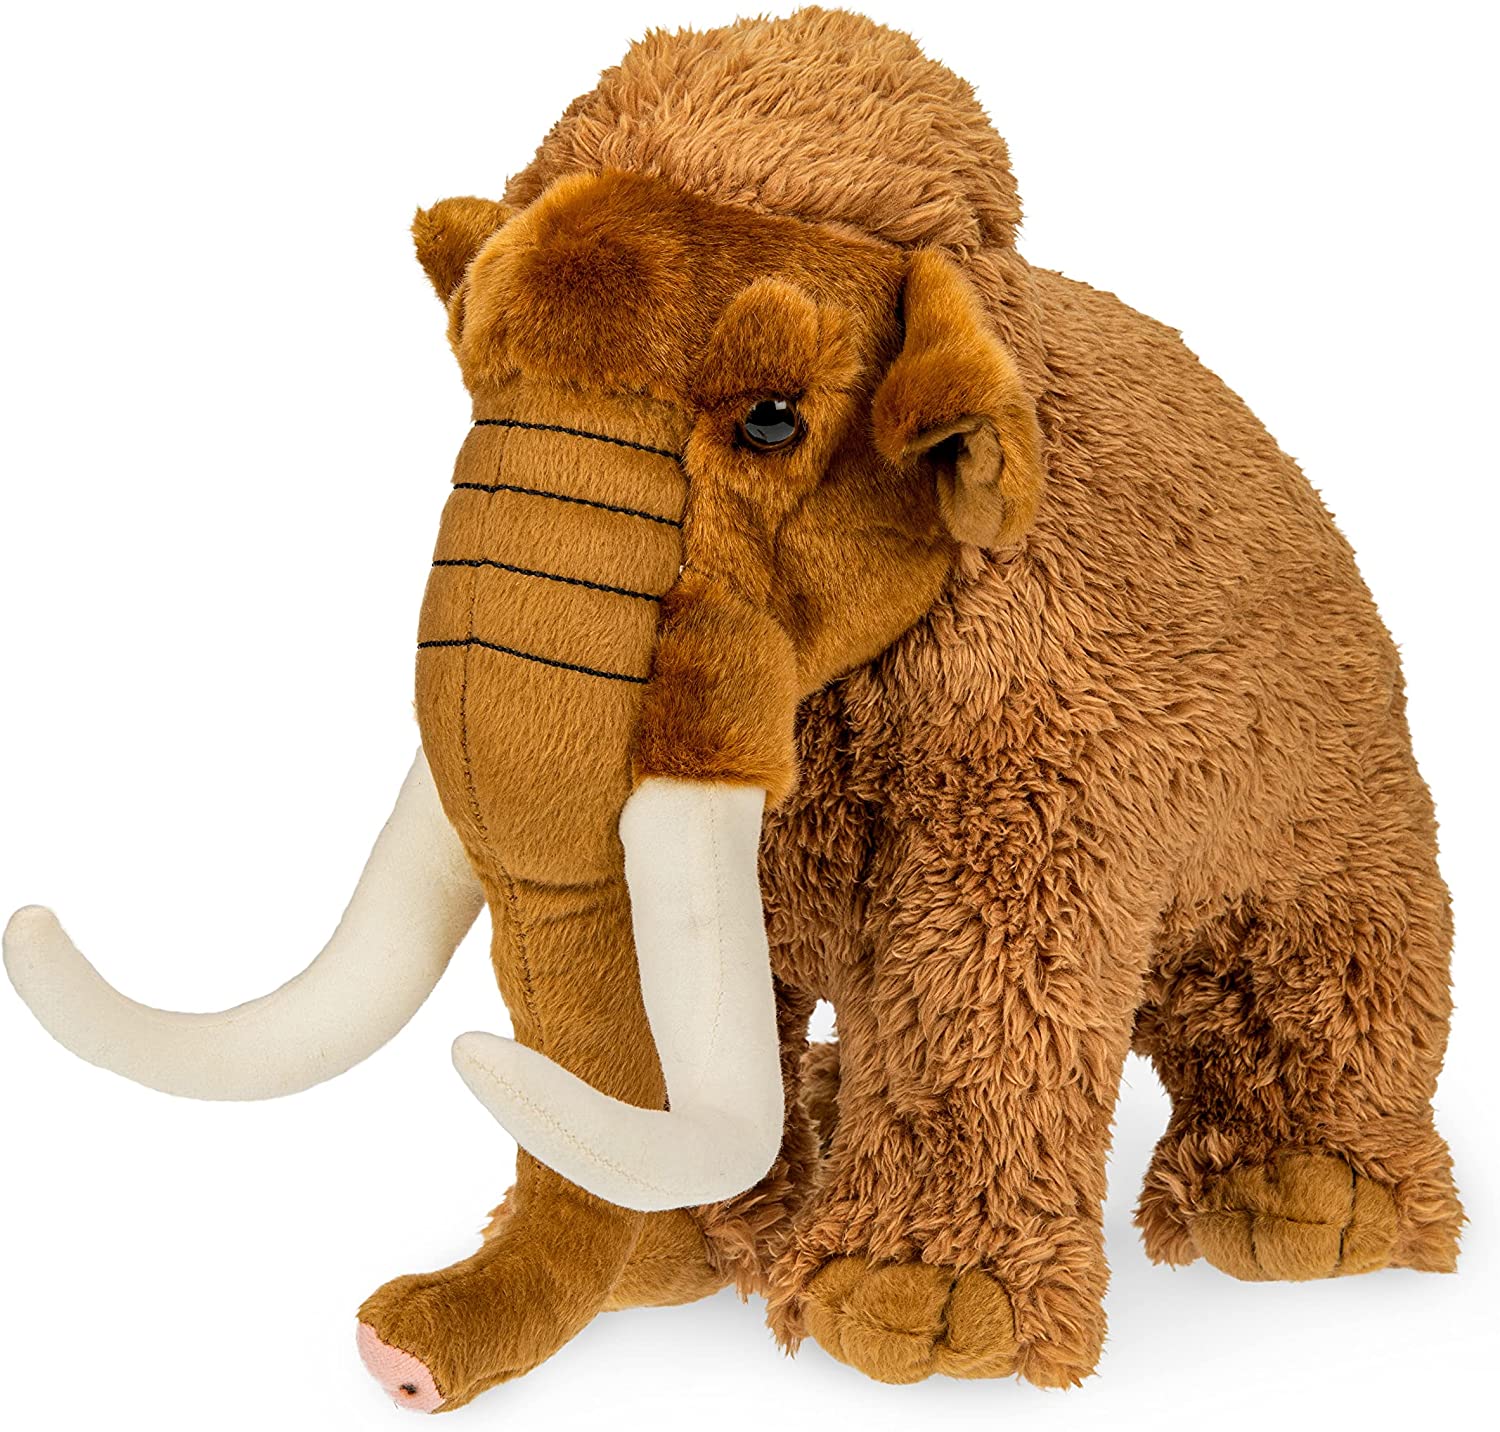 Mammut, groß - 29 cm (Höhe) - Plüsch-Elefant, prähistorisches Wildtier - Plüschtier, Kuscheltier